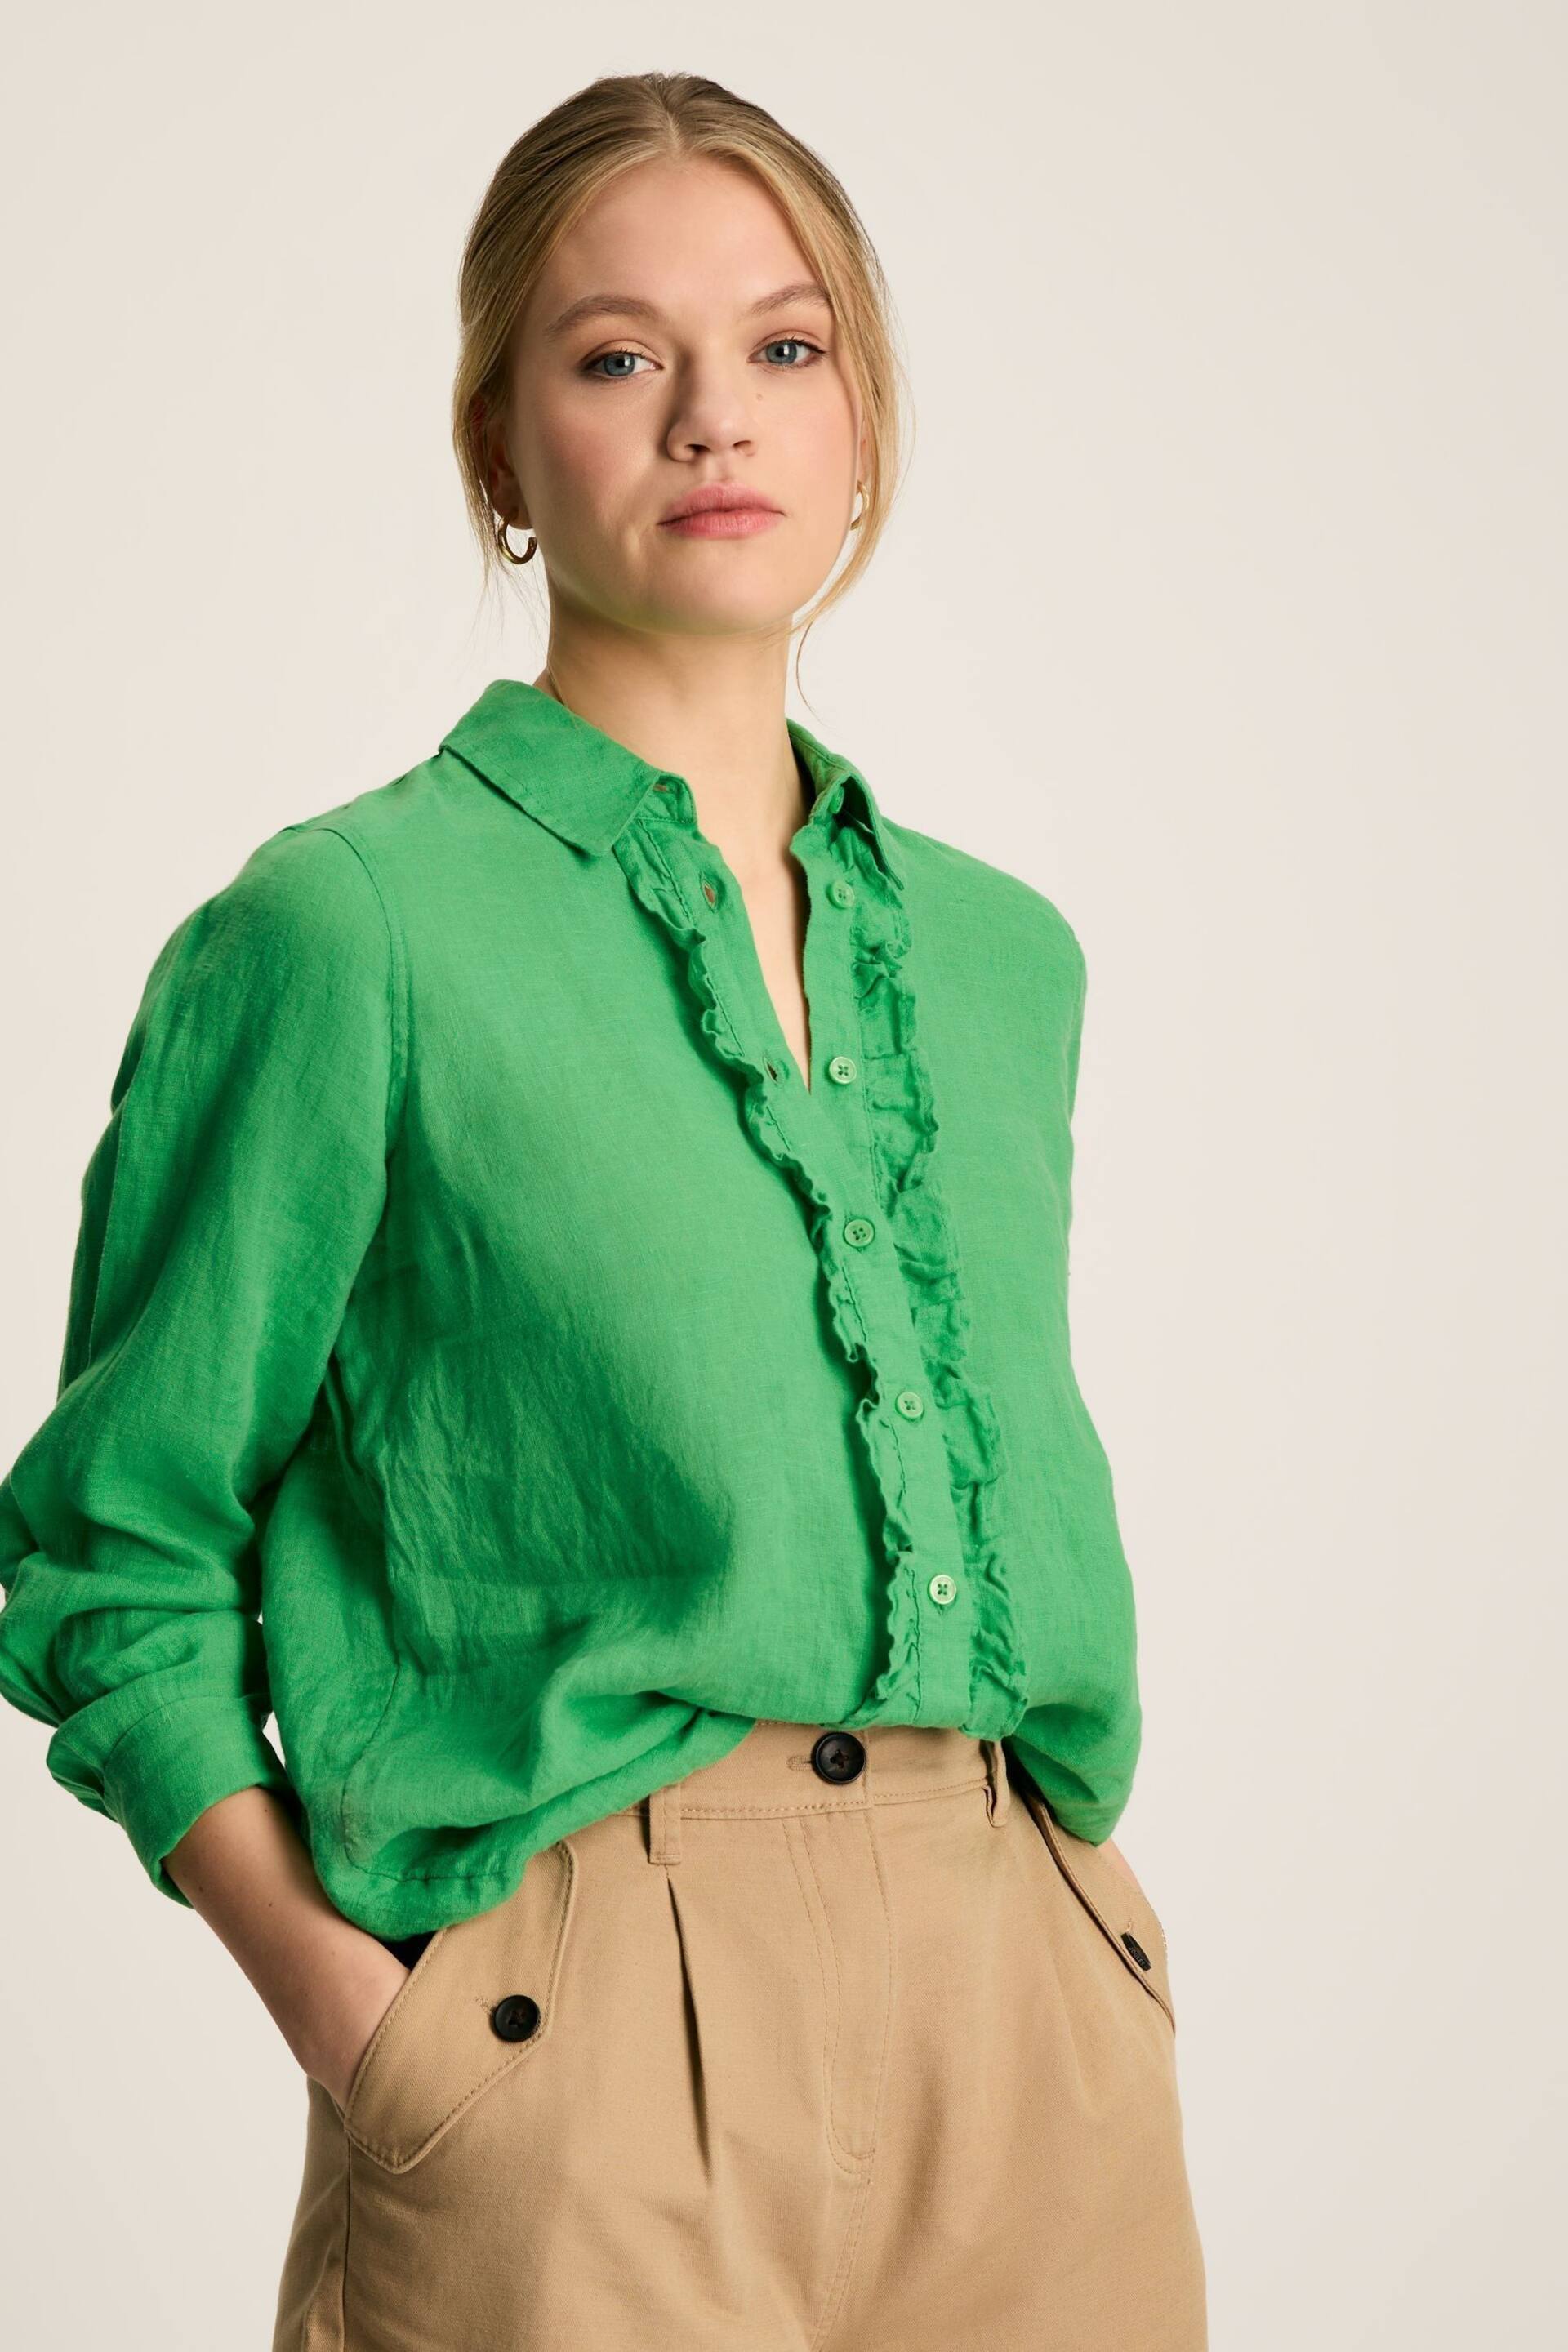 Joules Selene Green 100% Linen Shirt - Image 5 of 6